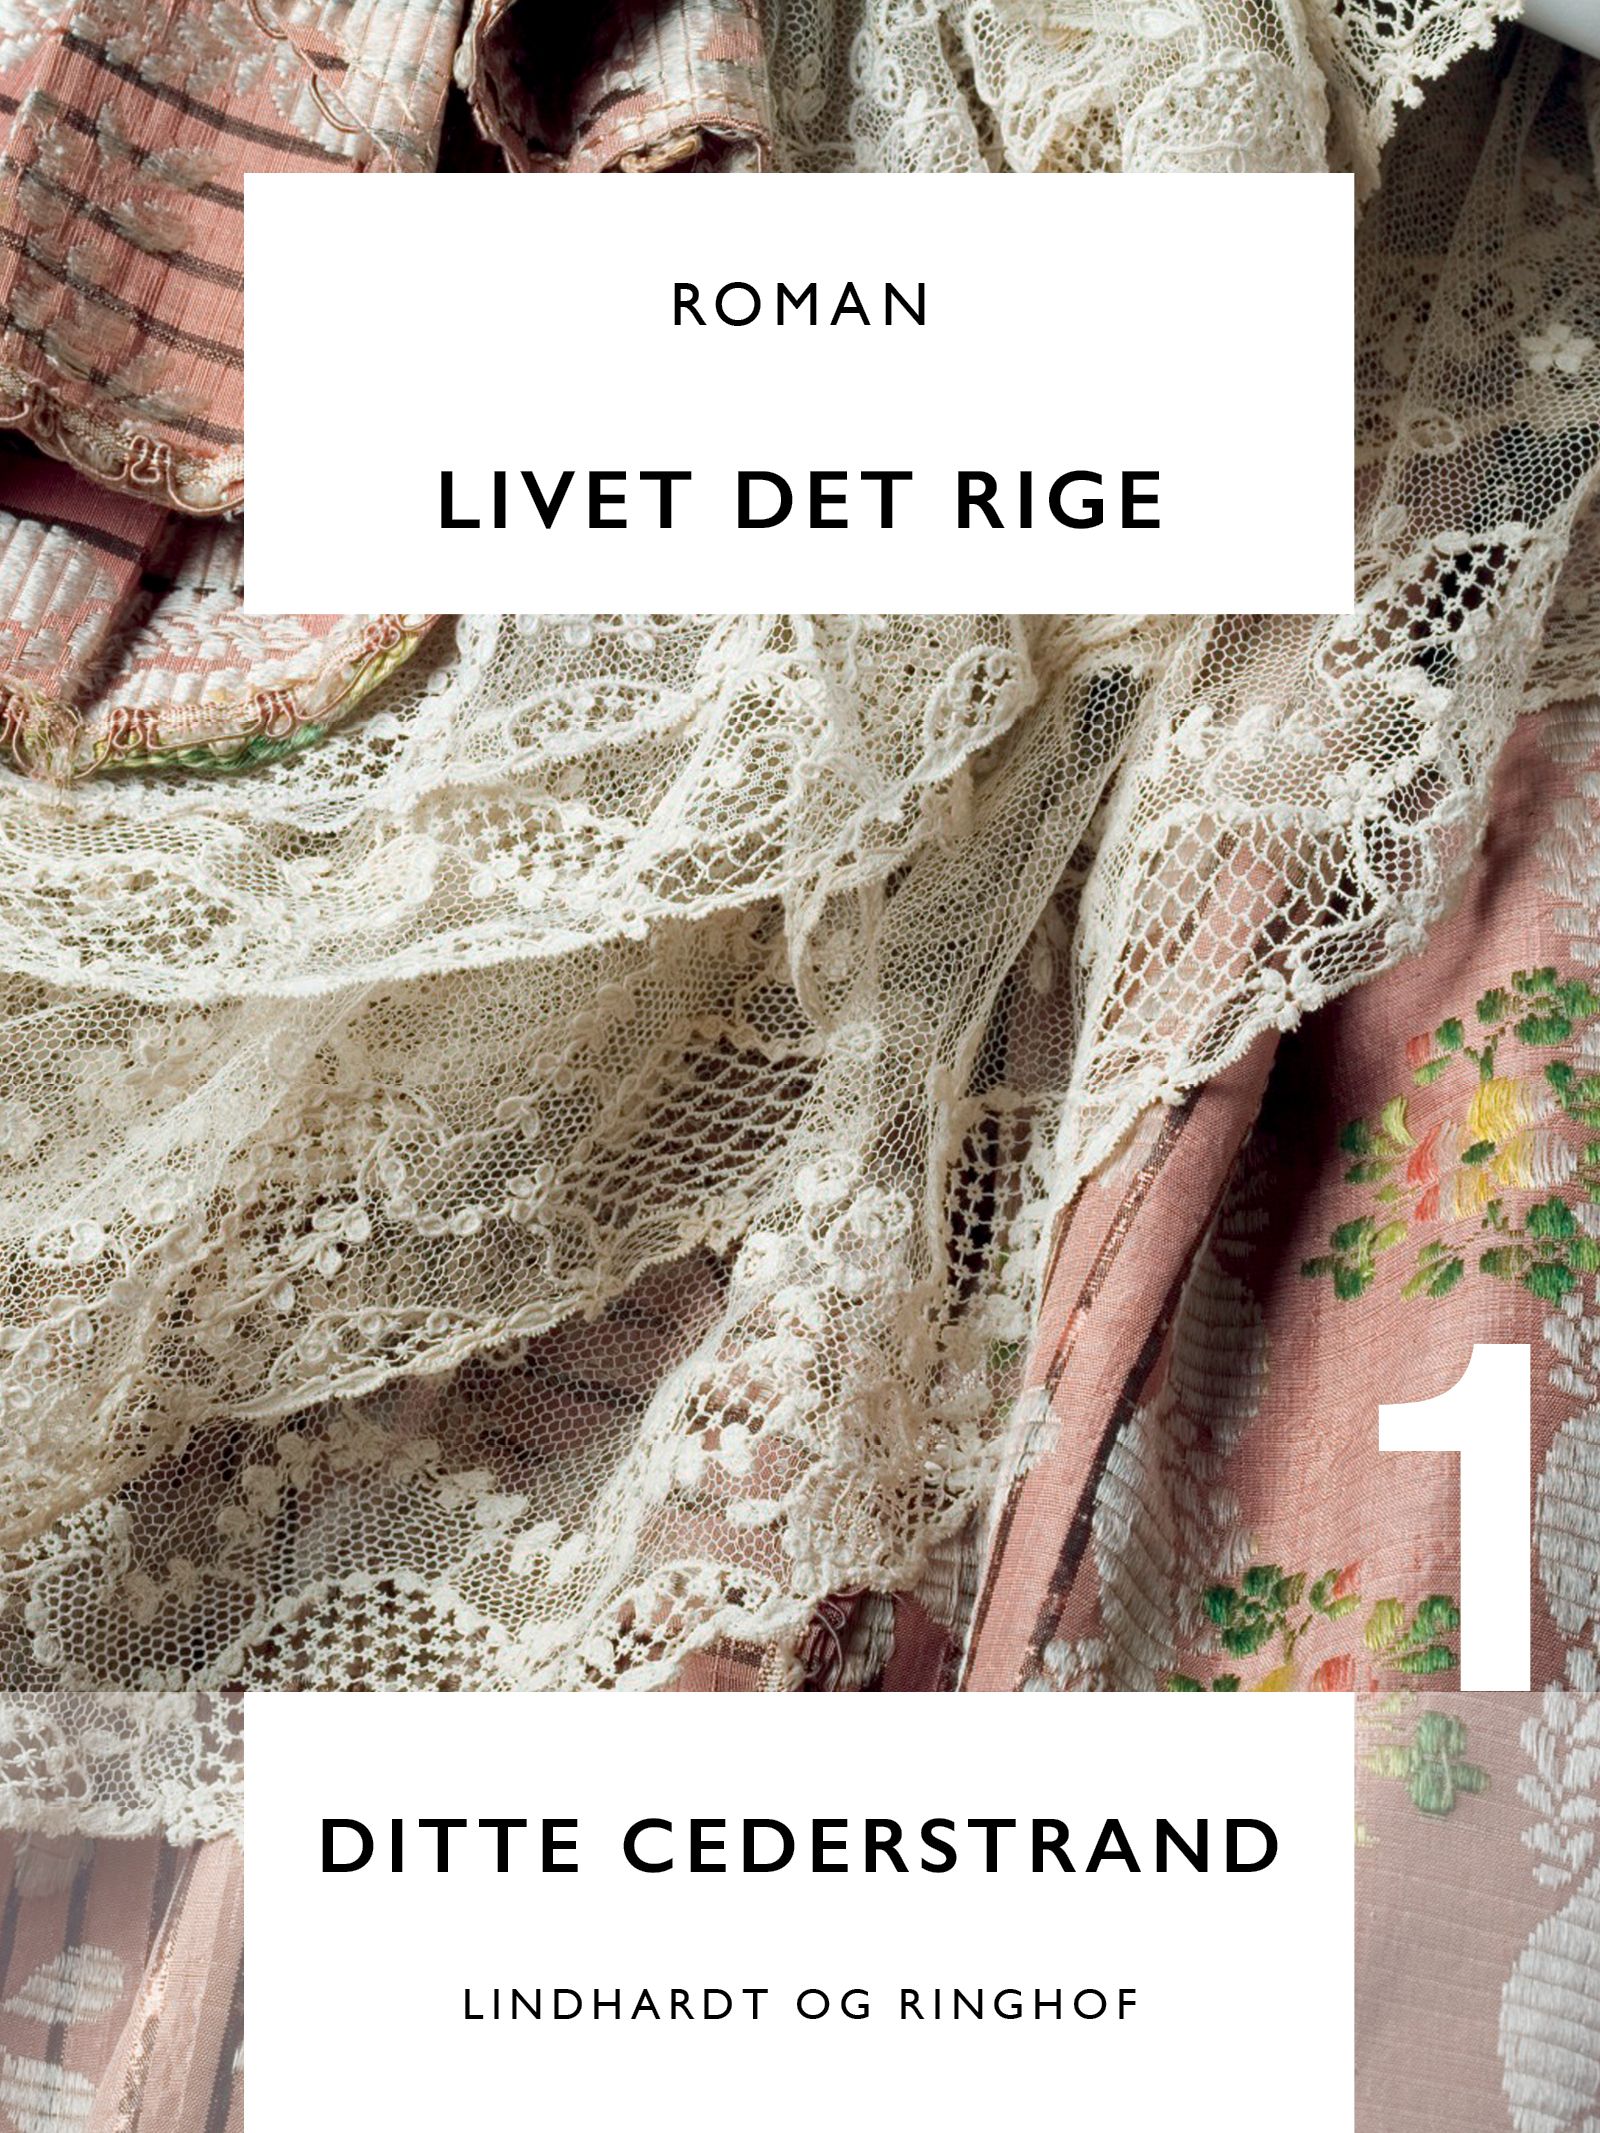 Livet det rige, eBook by Ditte Cederstrand